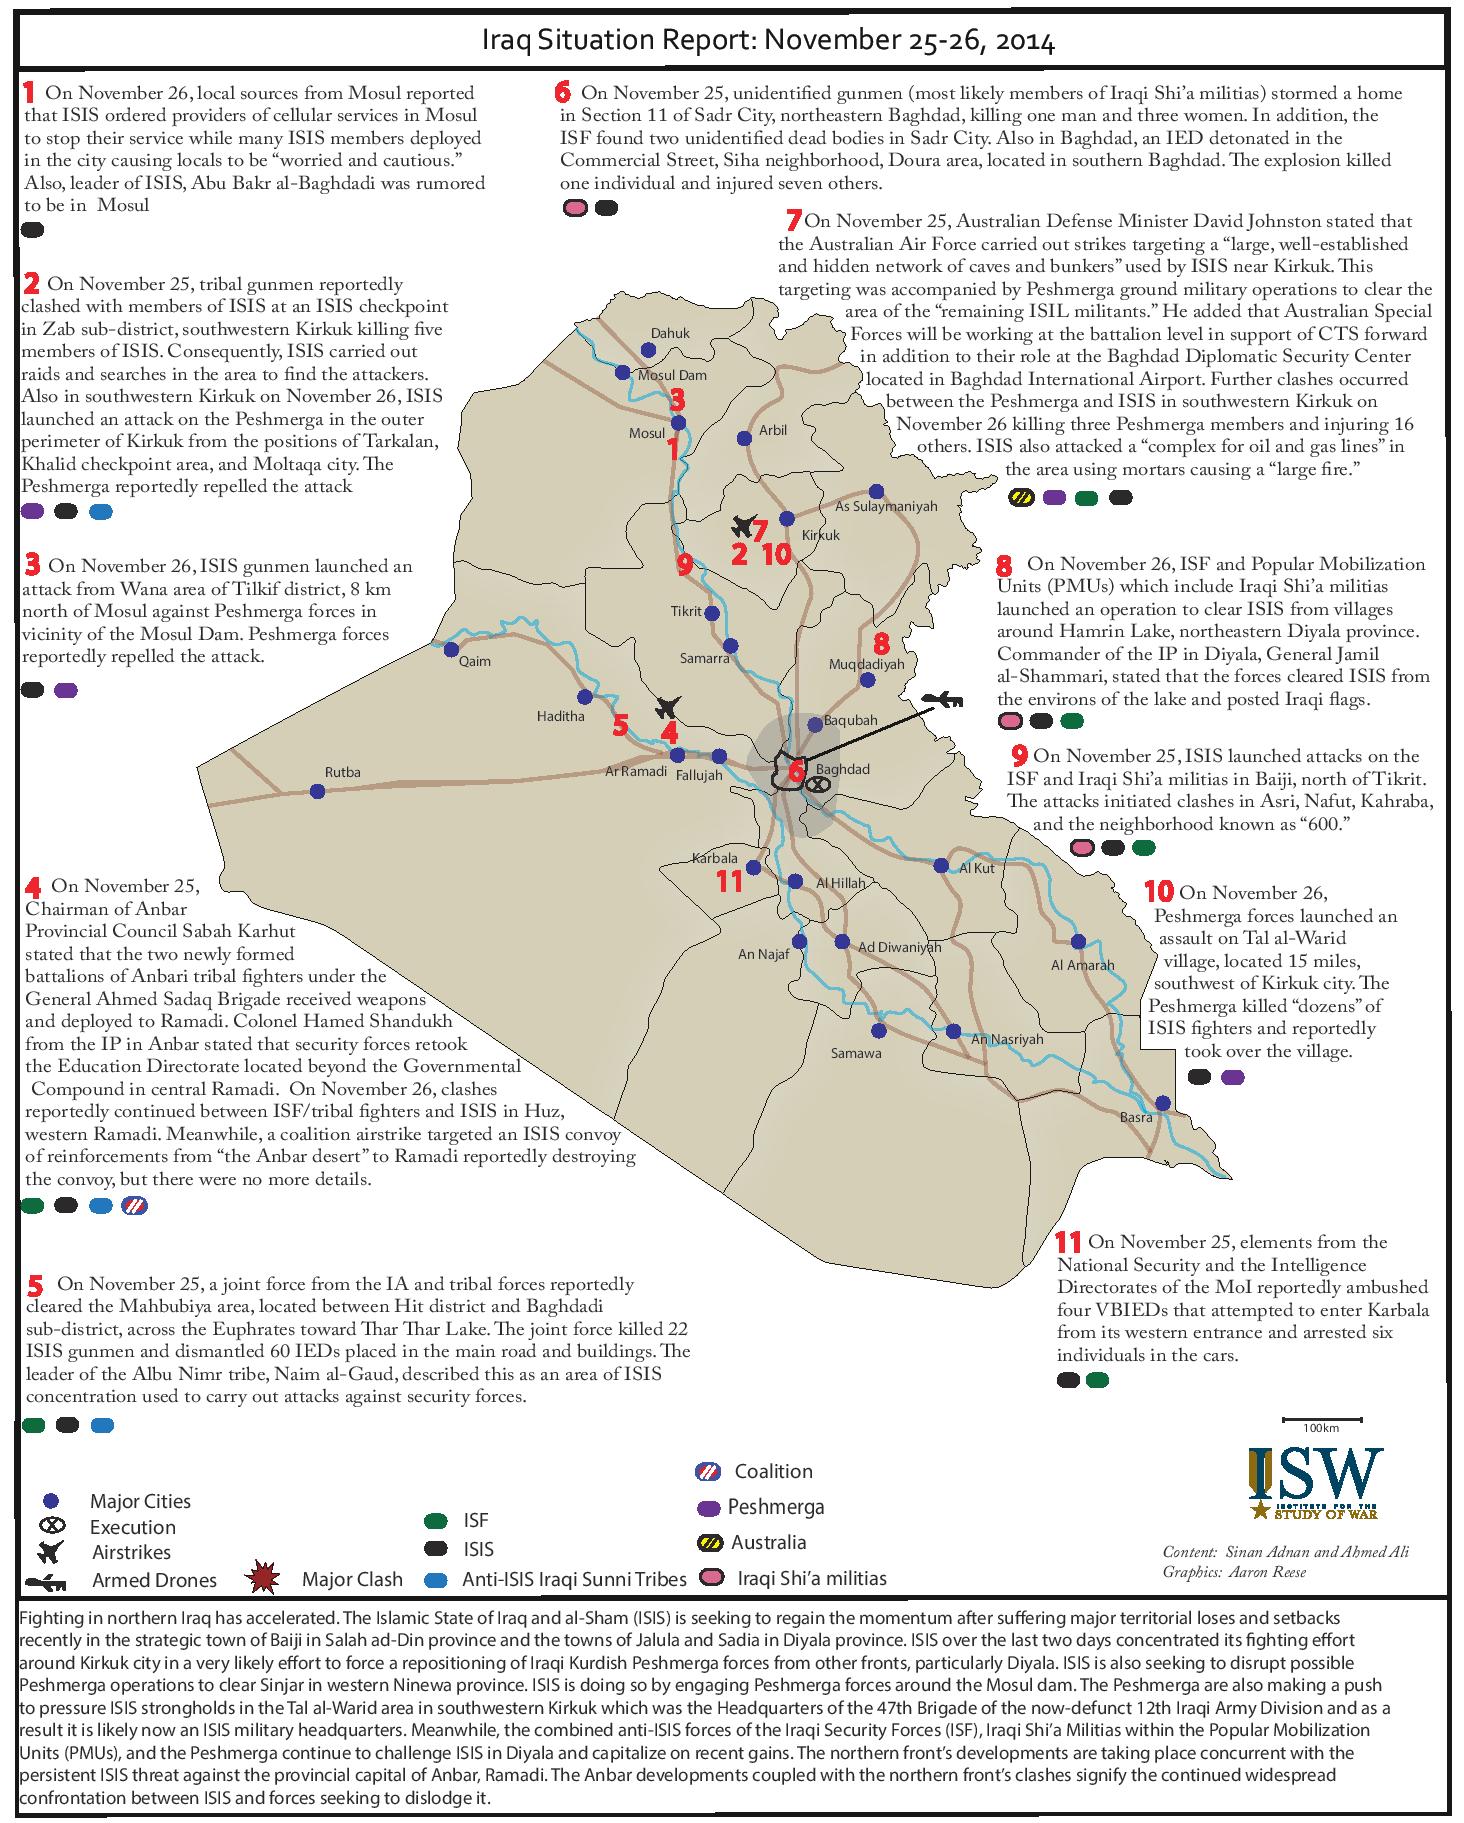 تقرير يكشف اوضاع  العراق خلال يومي 25-26 تشرين الثاني 2014